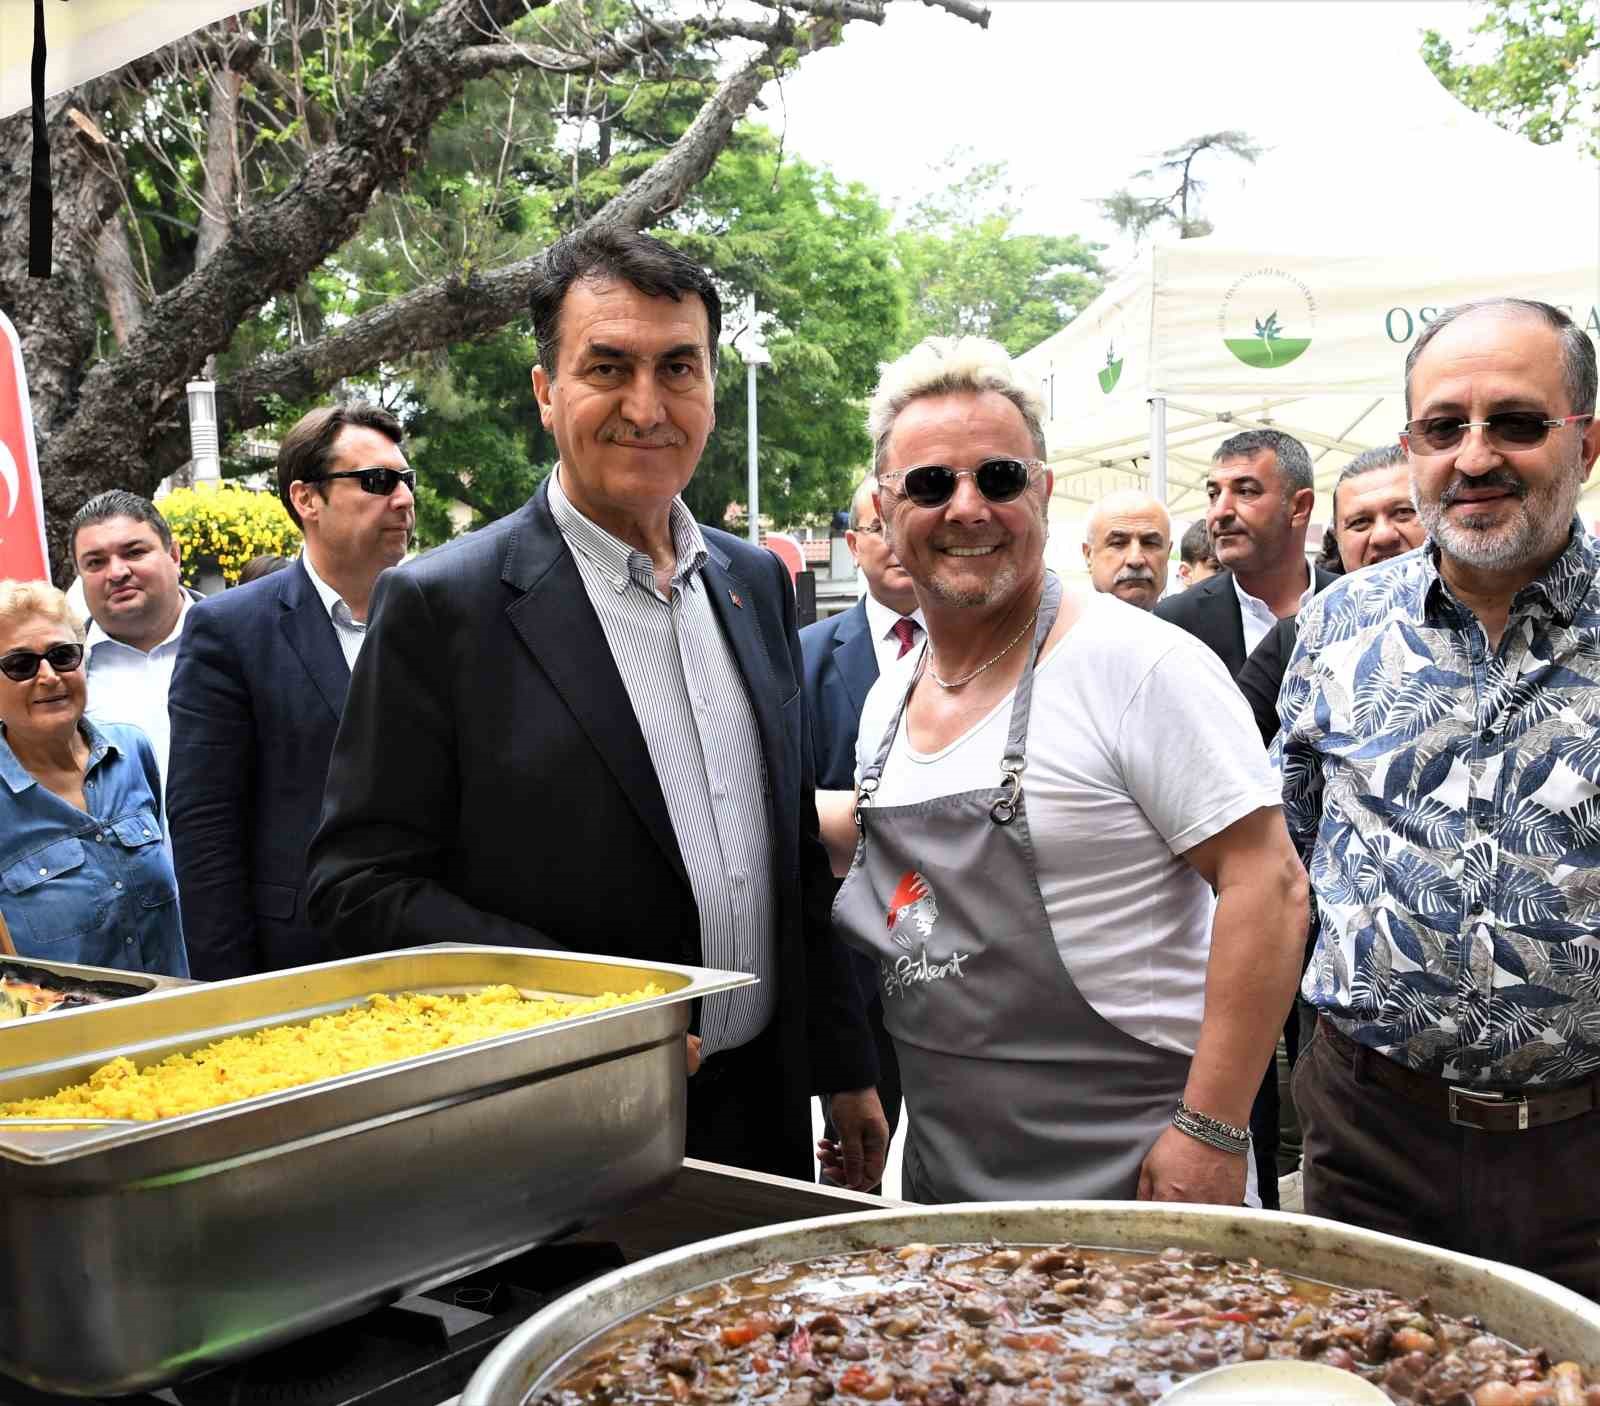 Bursa’nın lezzetleri Osmangazi’de tanıtılıyor